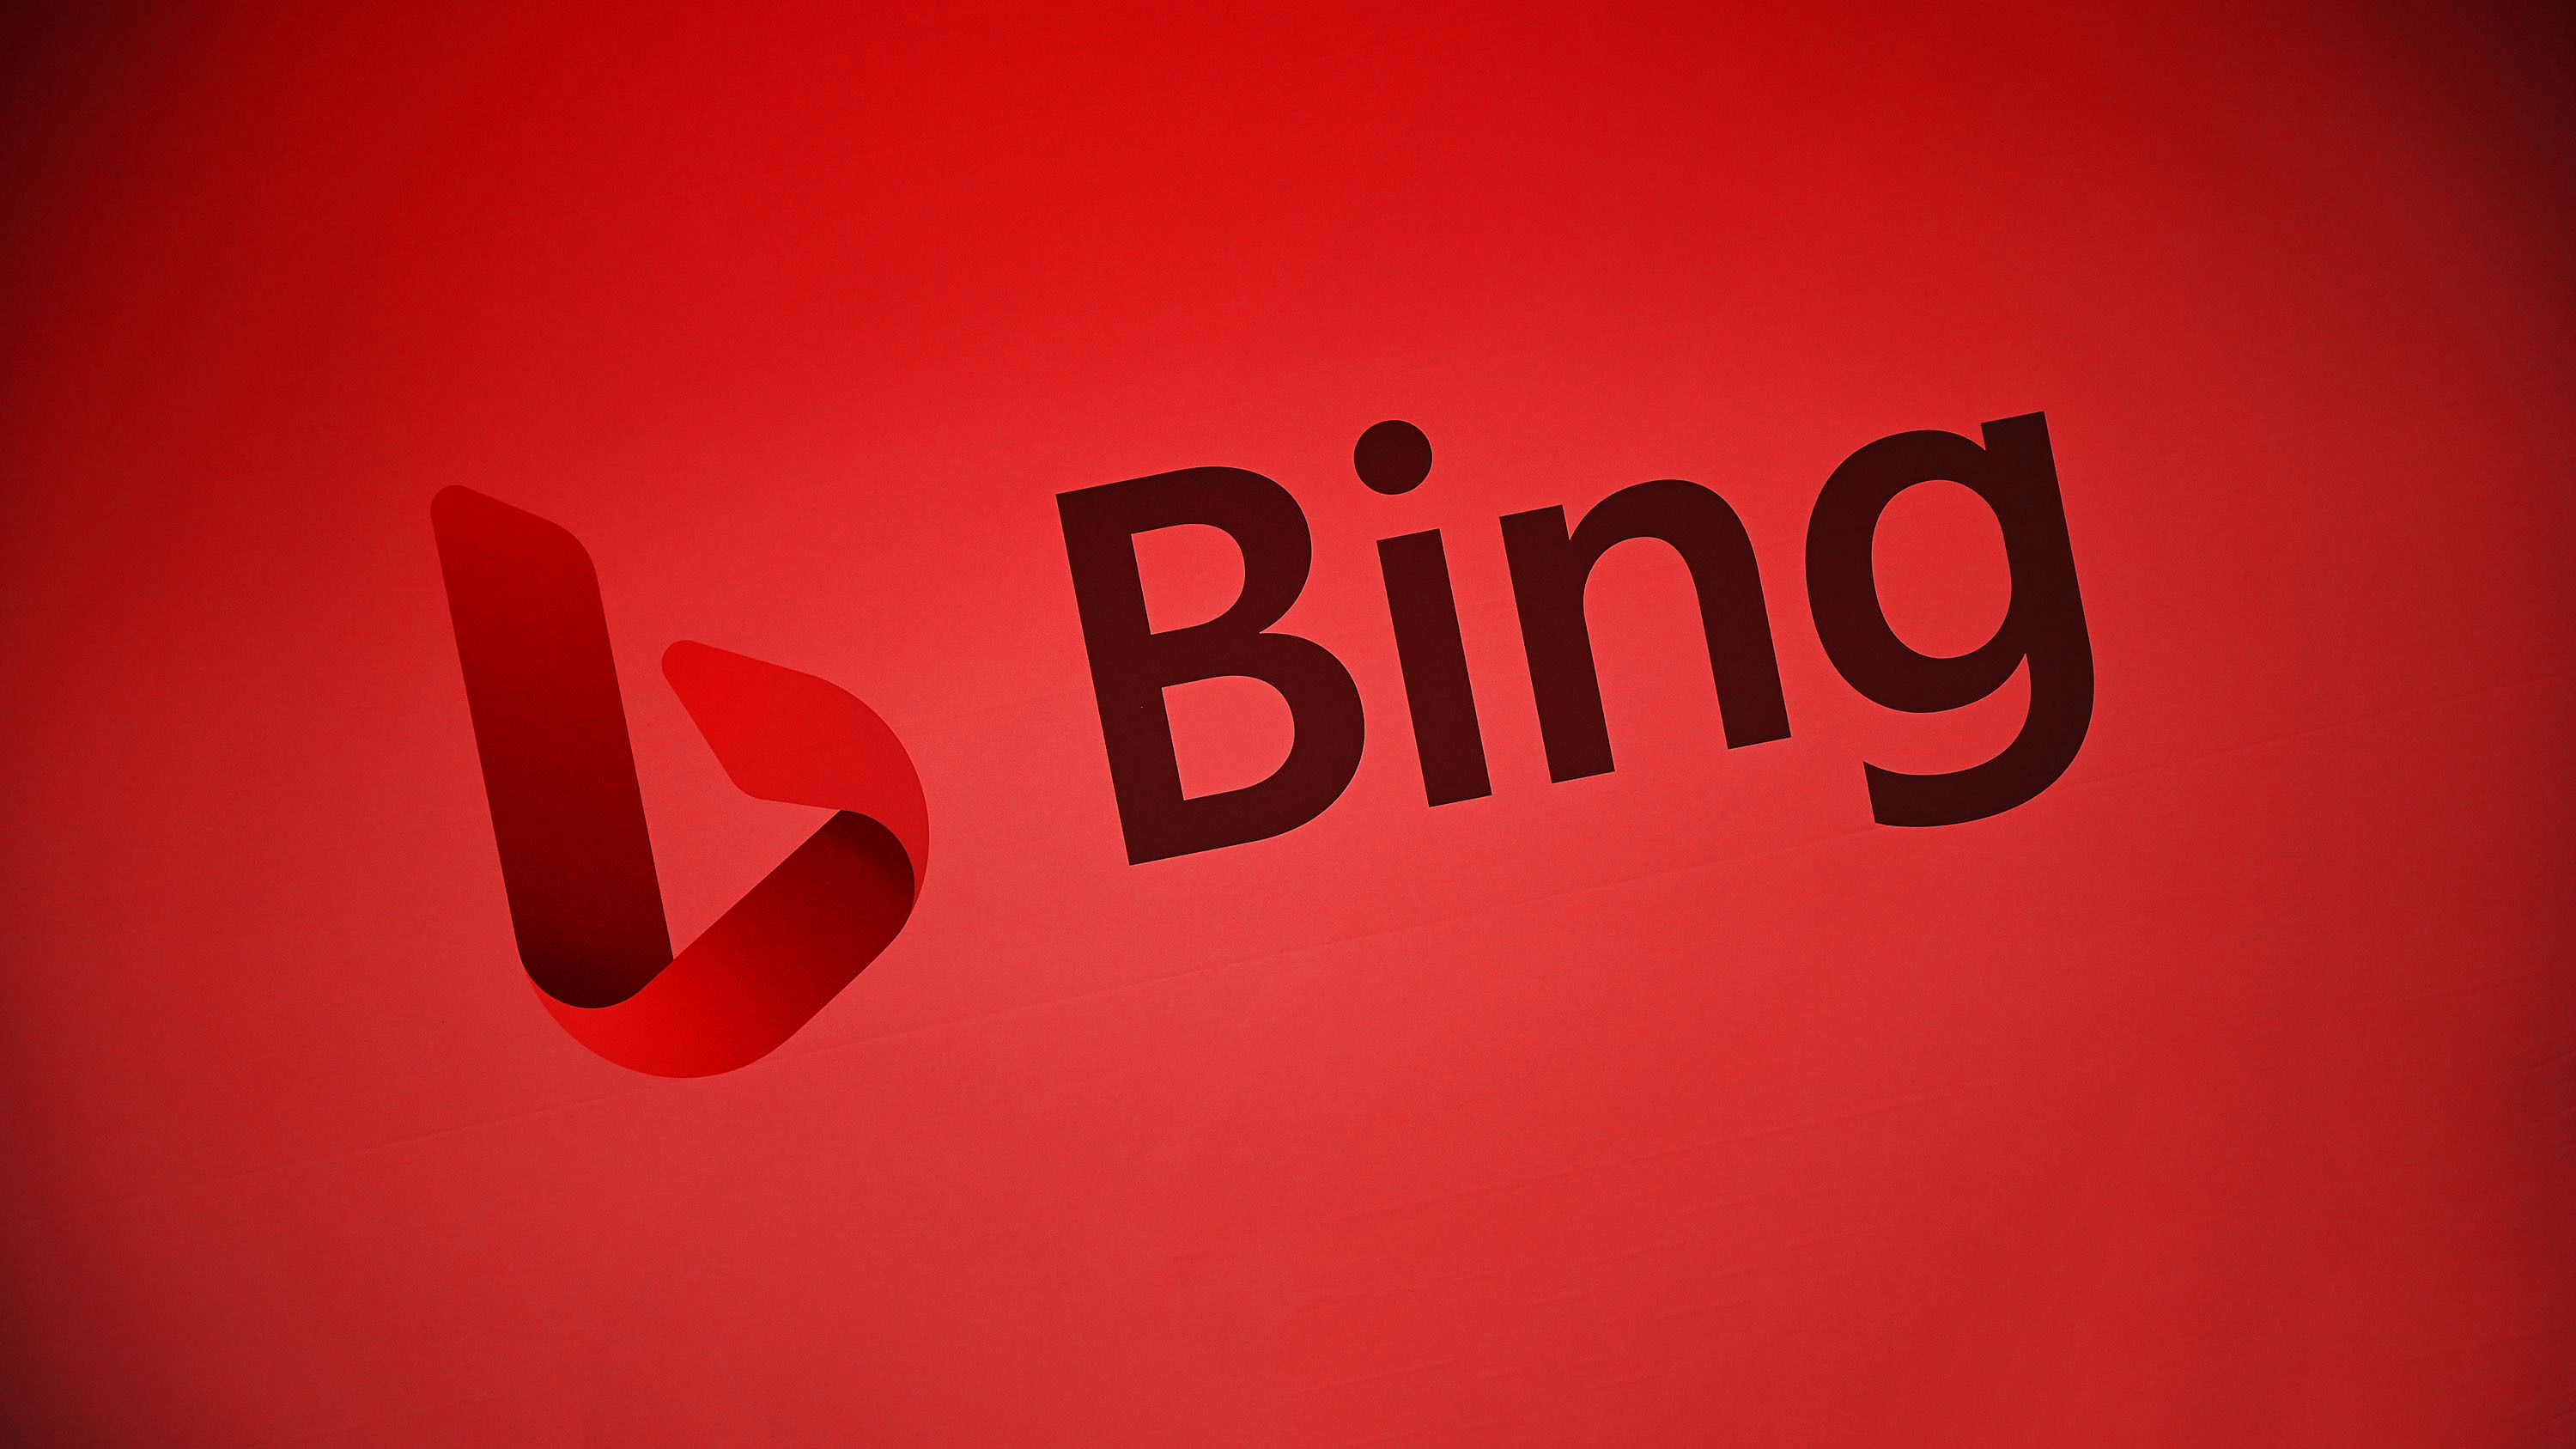 Microsoft CEO'su Satya Nadella, Google'ın Bing'e adil davranmadığını söylüyor - Dünyadan Güncel Teknoloji Haberleri